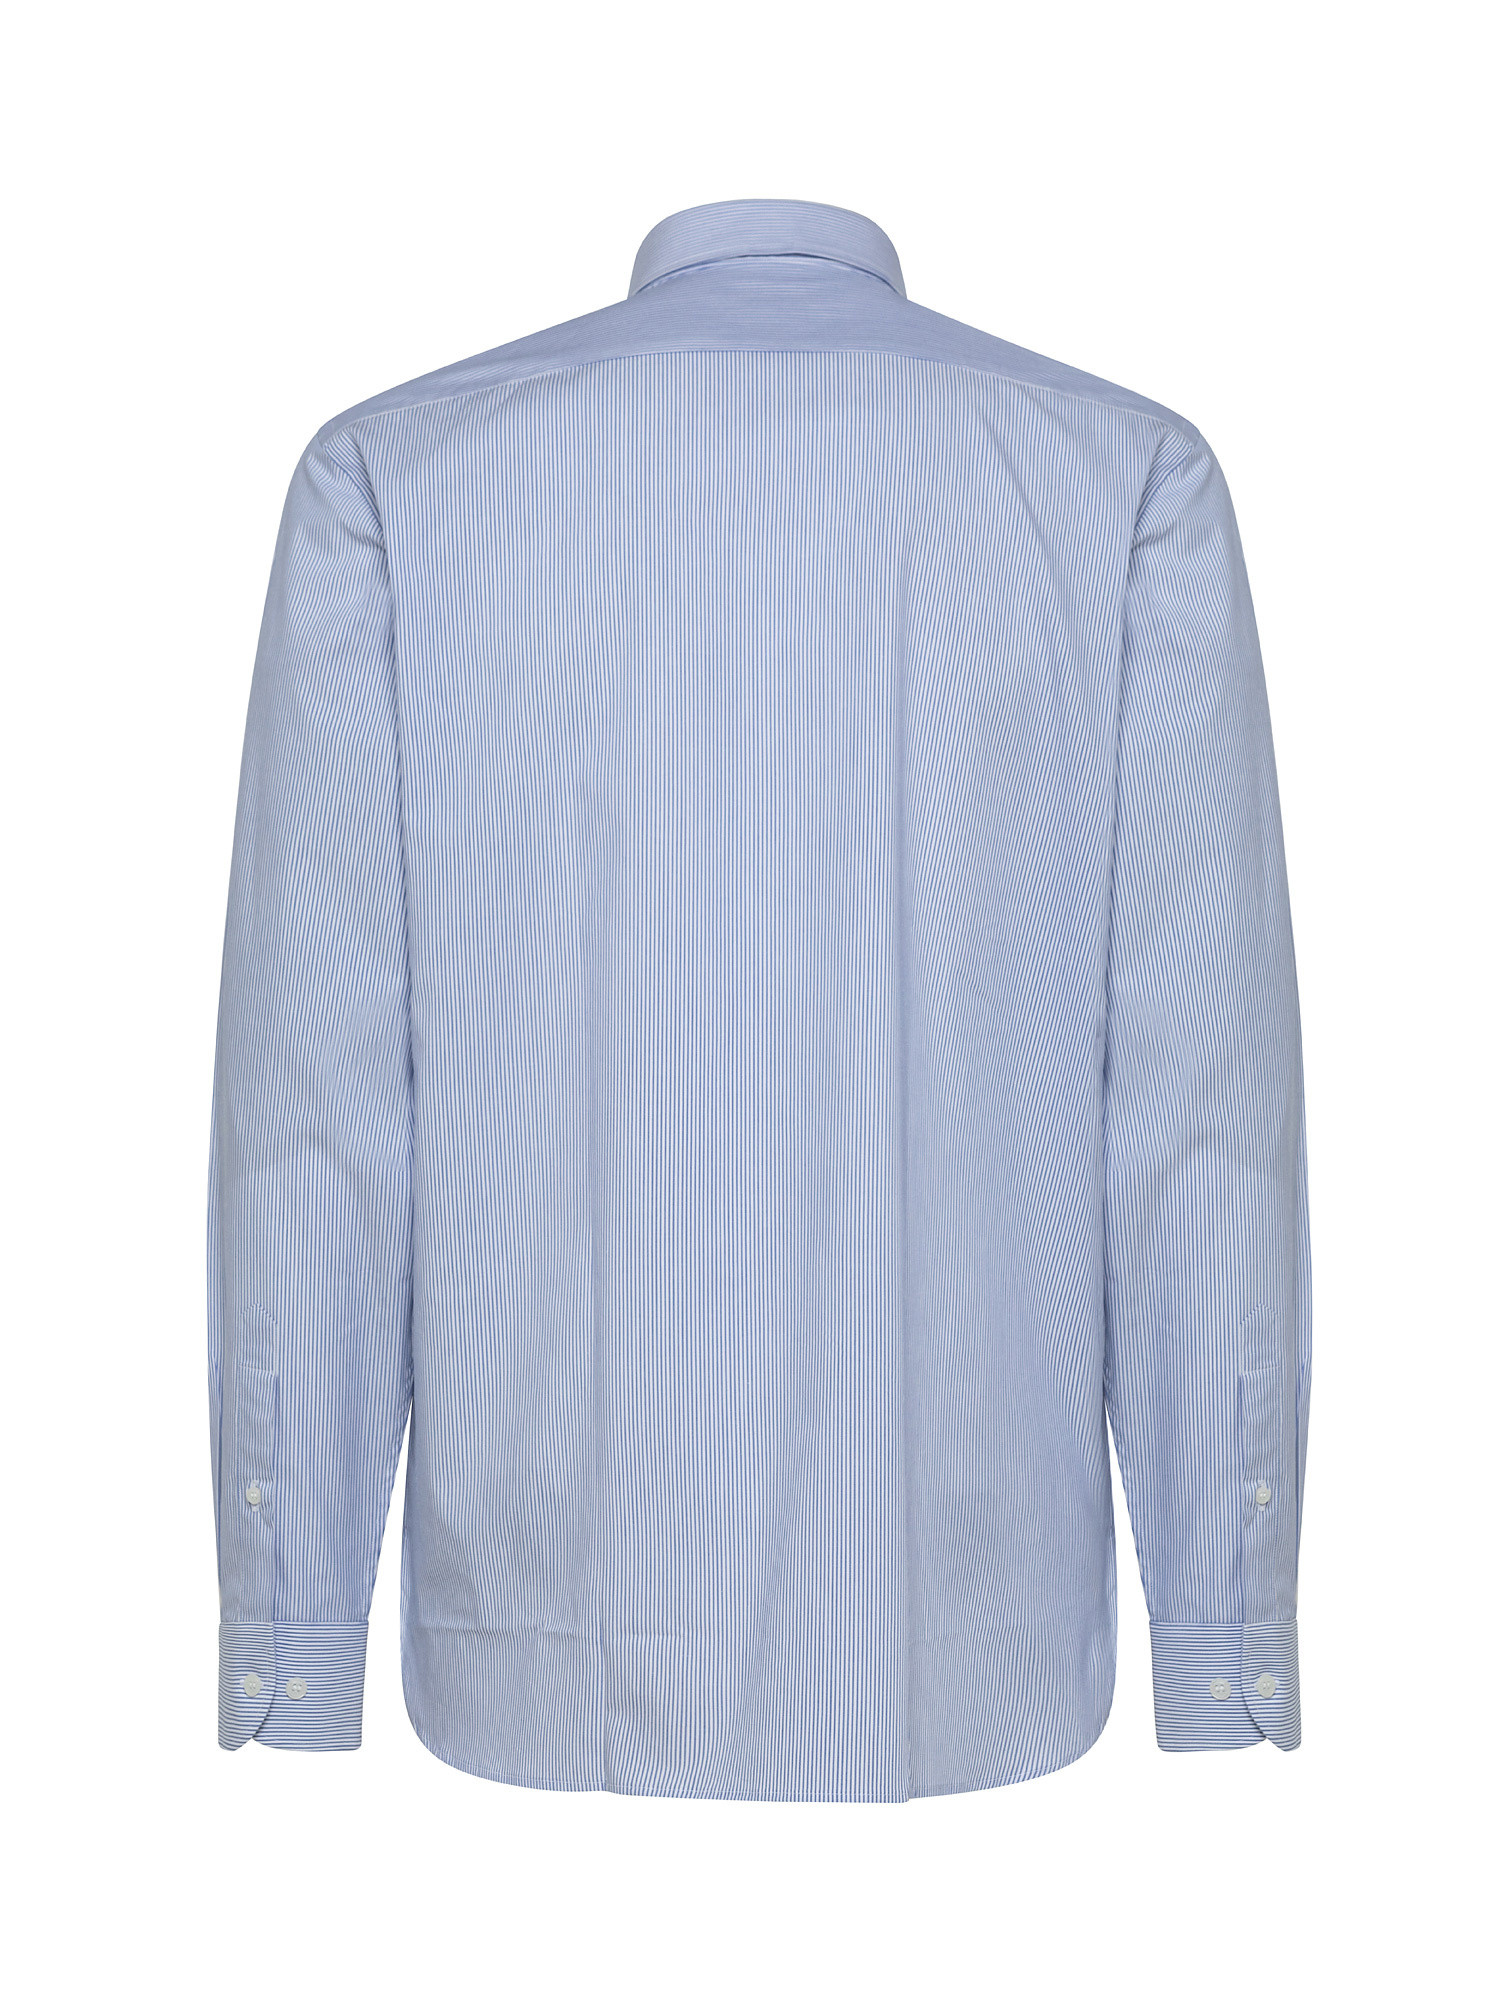 Camicia tailor fit in cotone popeline, Azzurro, large